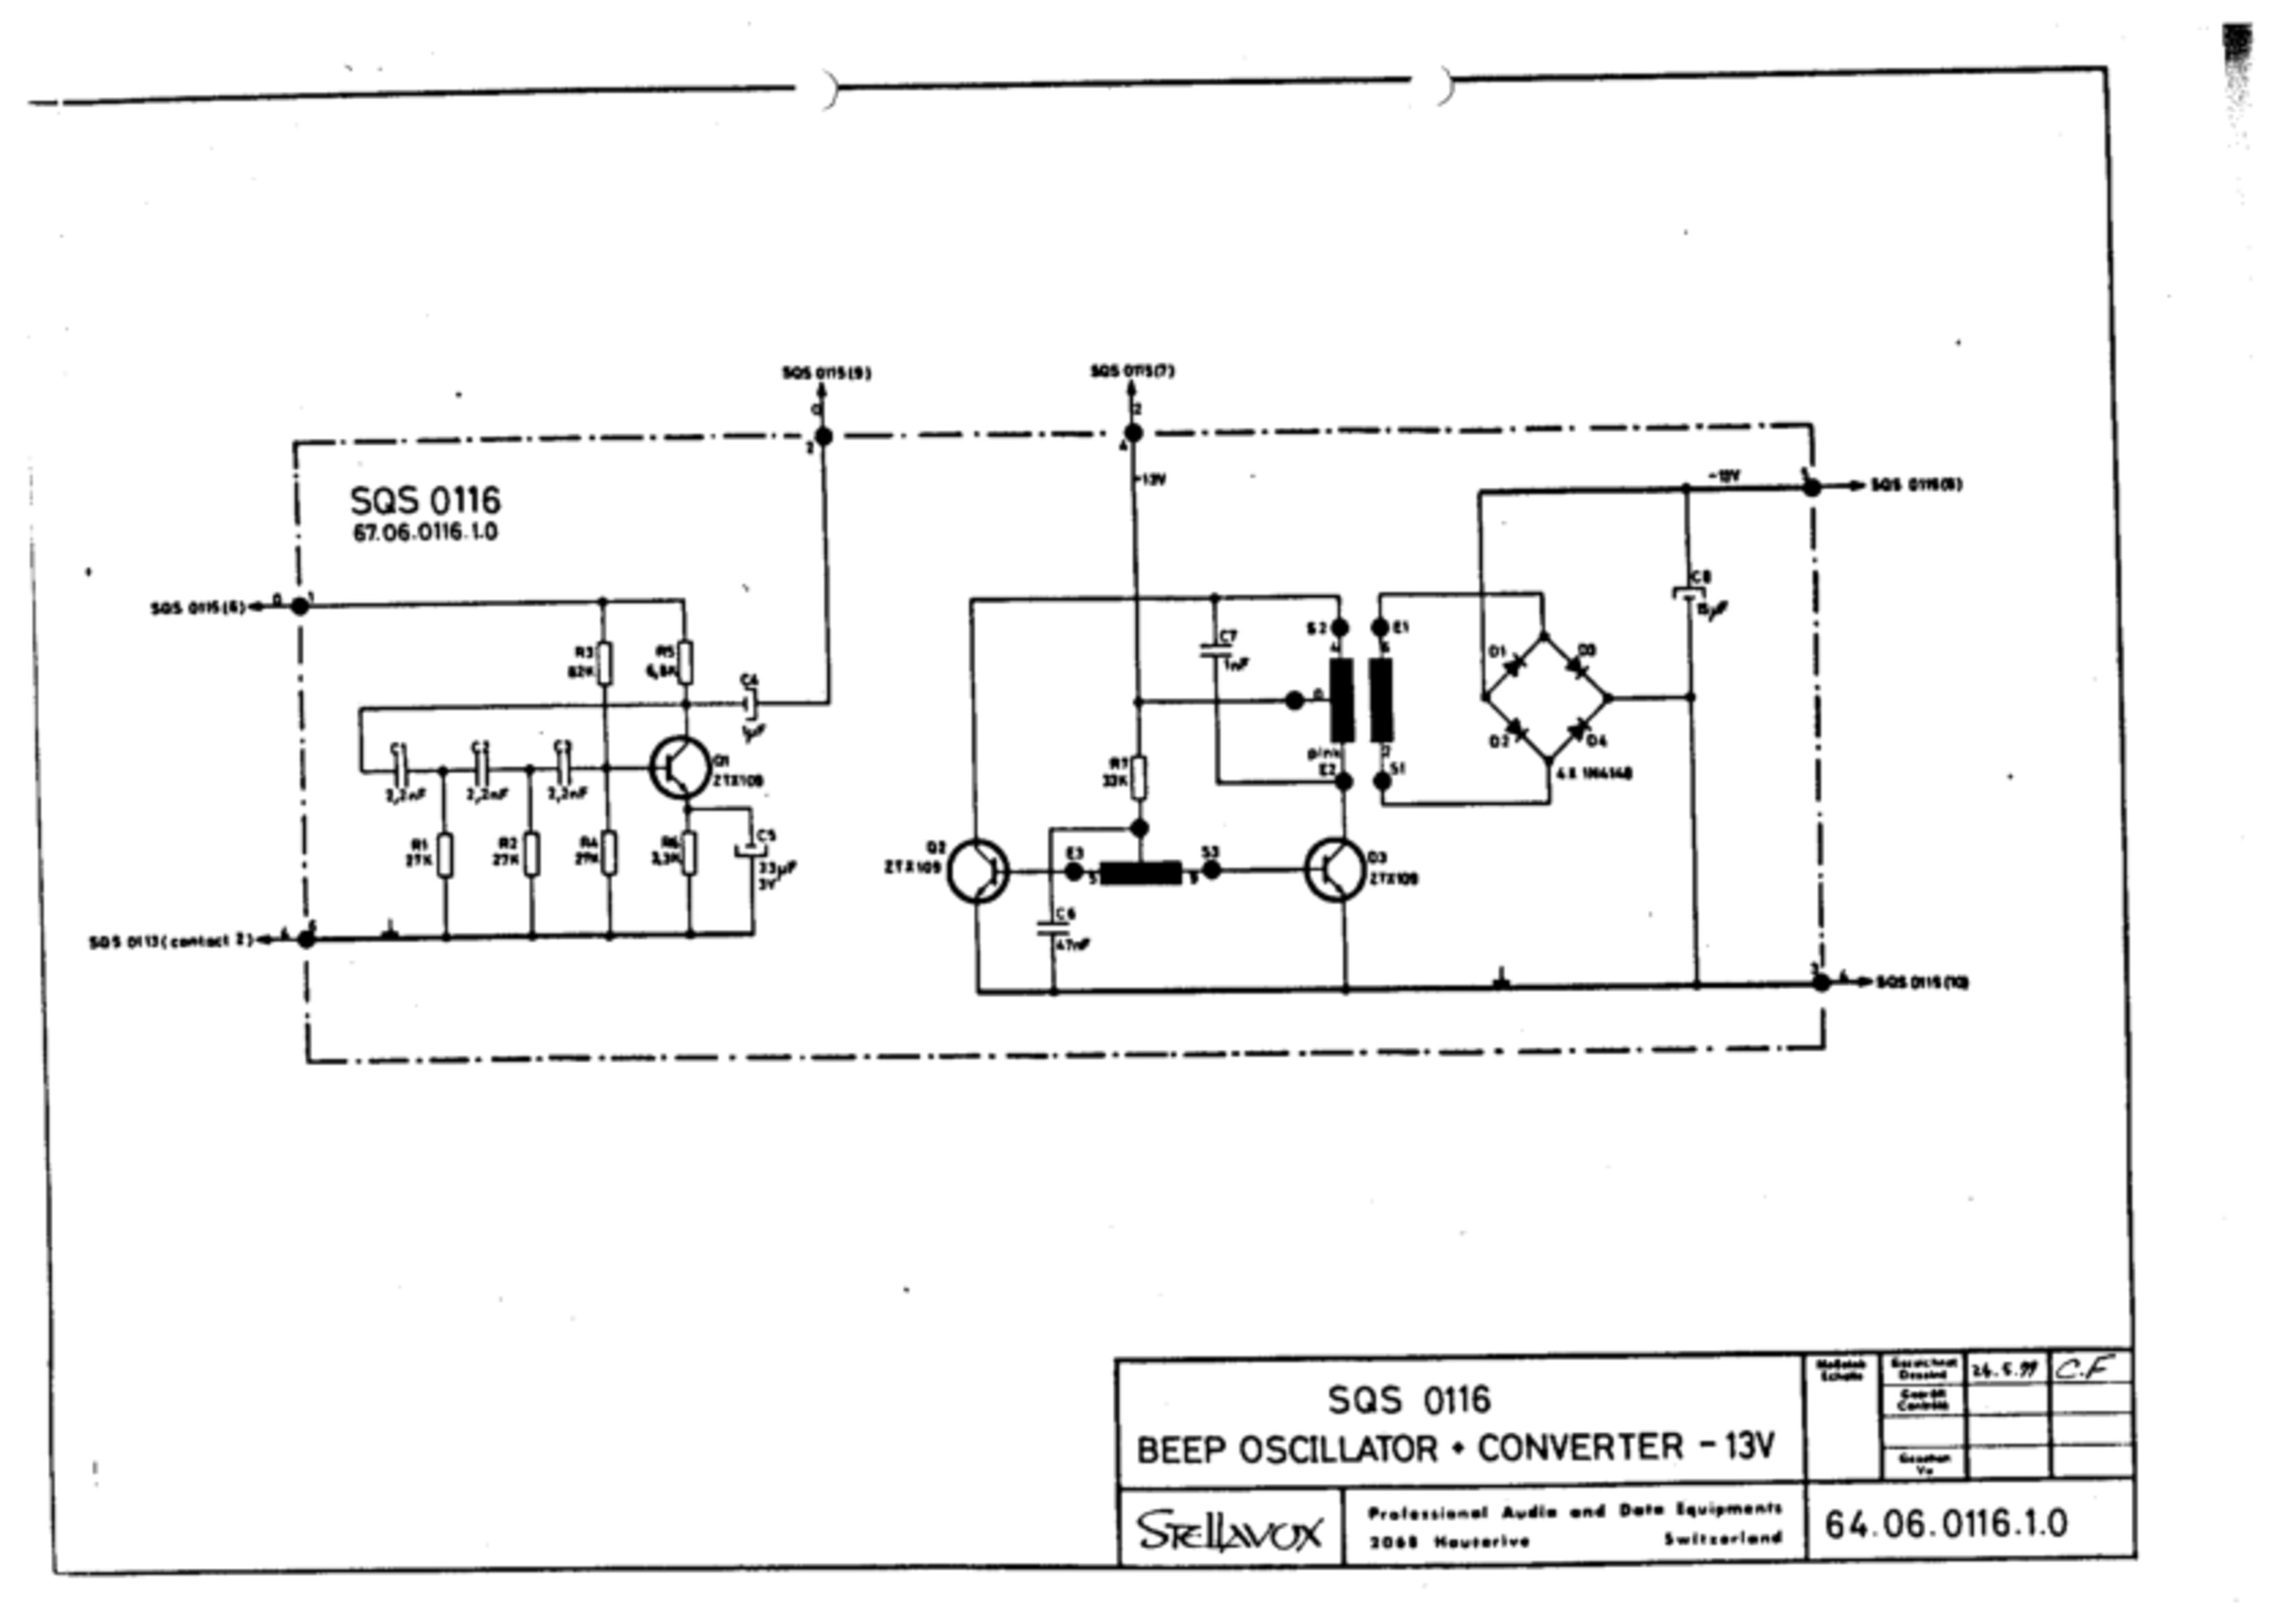 SQS 0116 Beep oscillator - converter - 13V - No. 64.06.0116.1.0